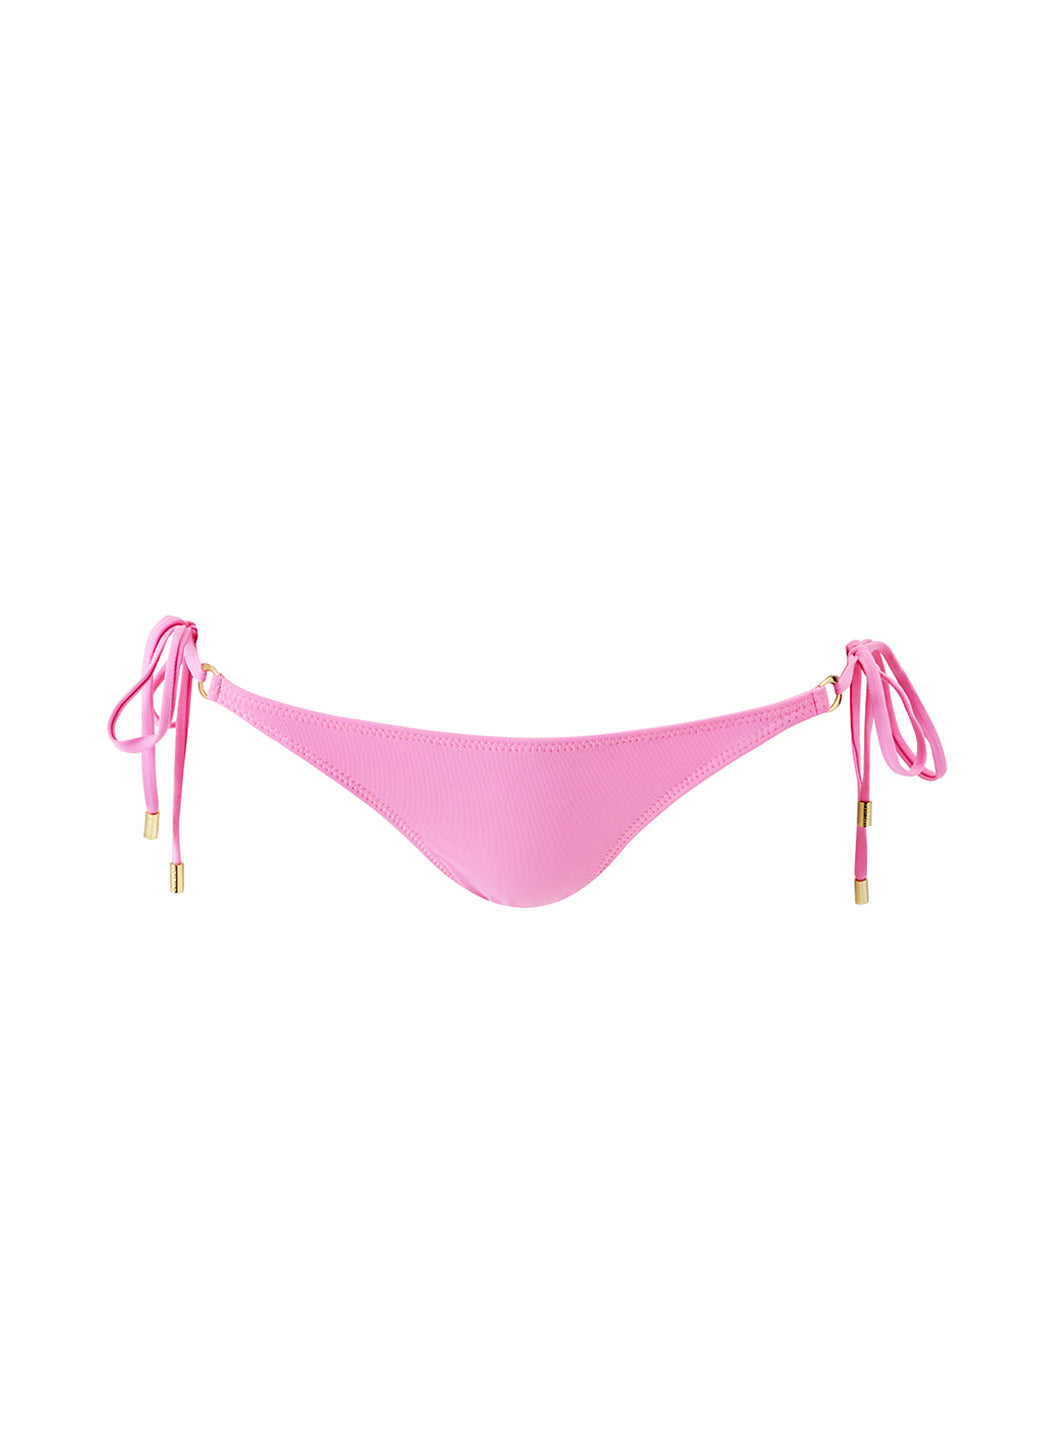 key-west-pink-bikini-bottom_cutouts_2024